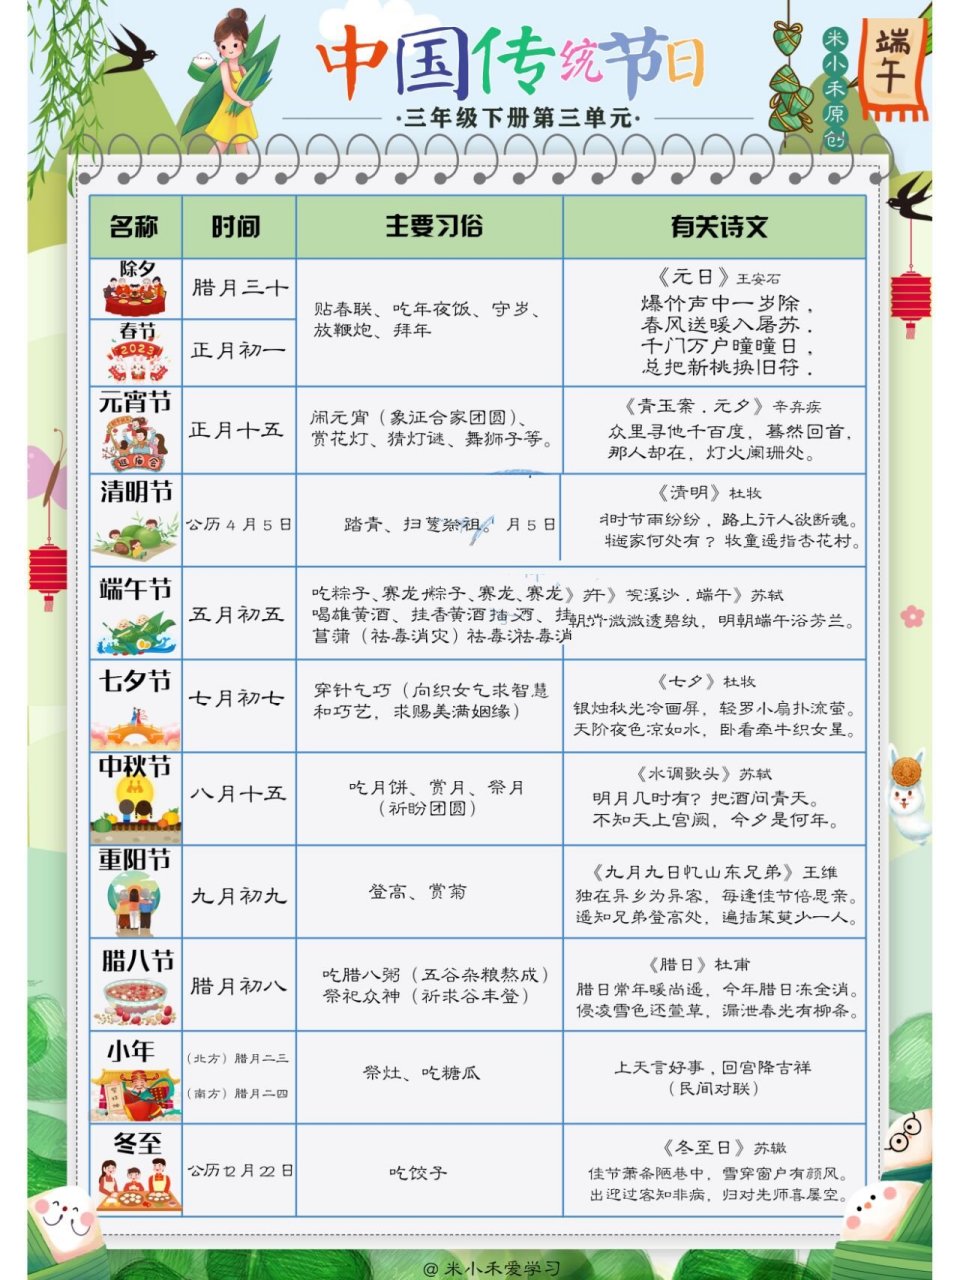 中国所有传统节日表格图片